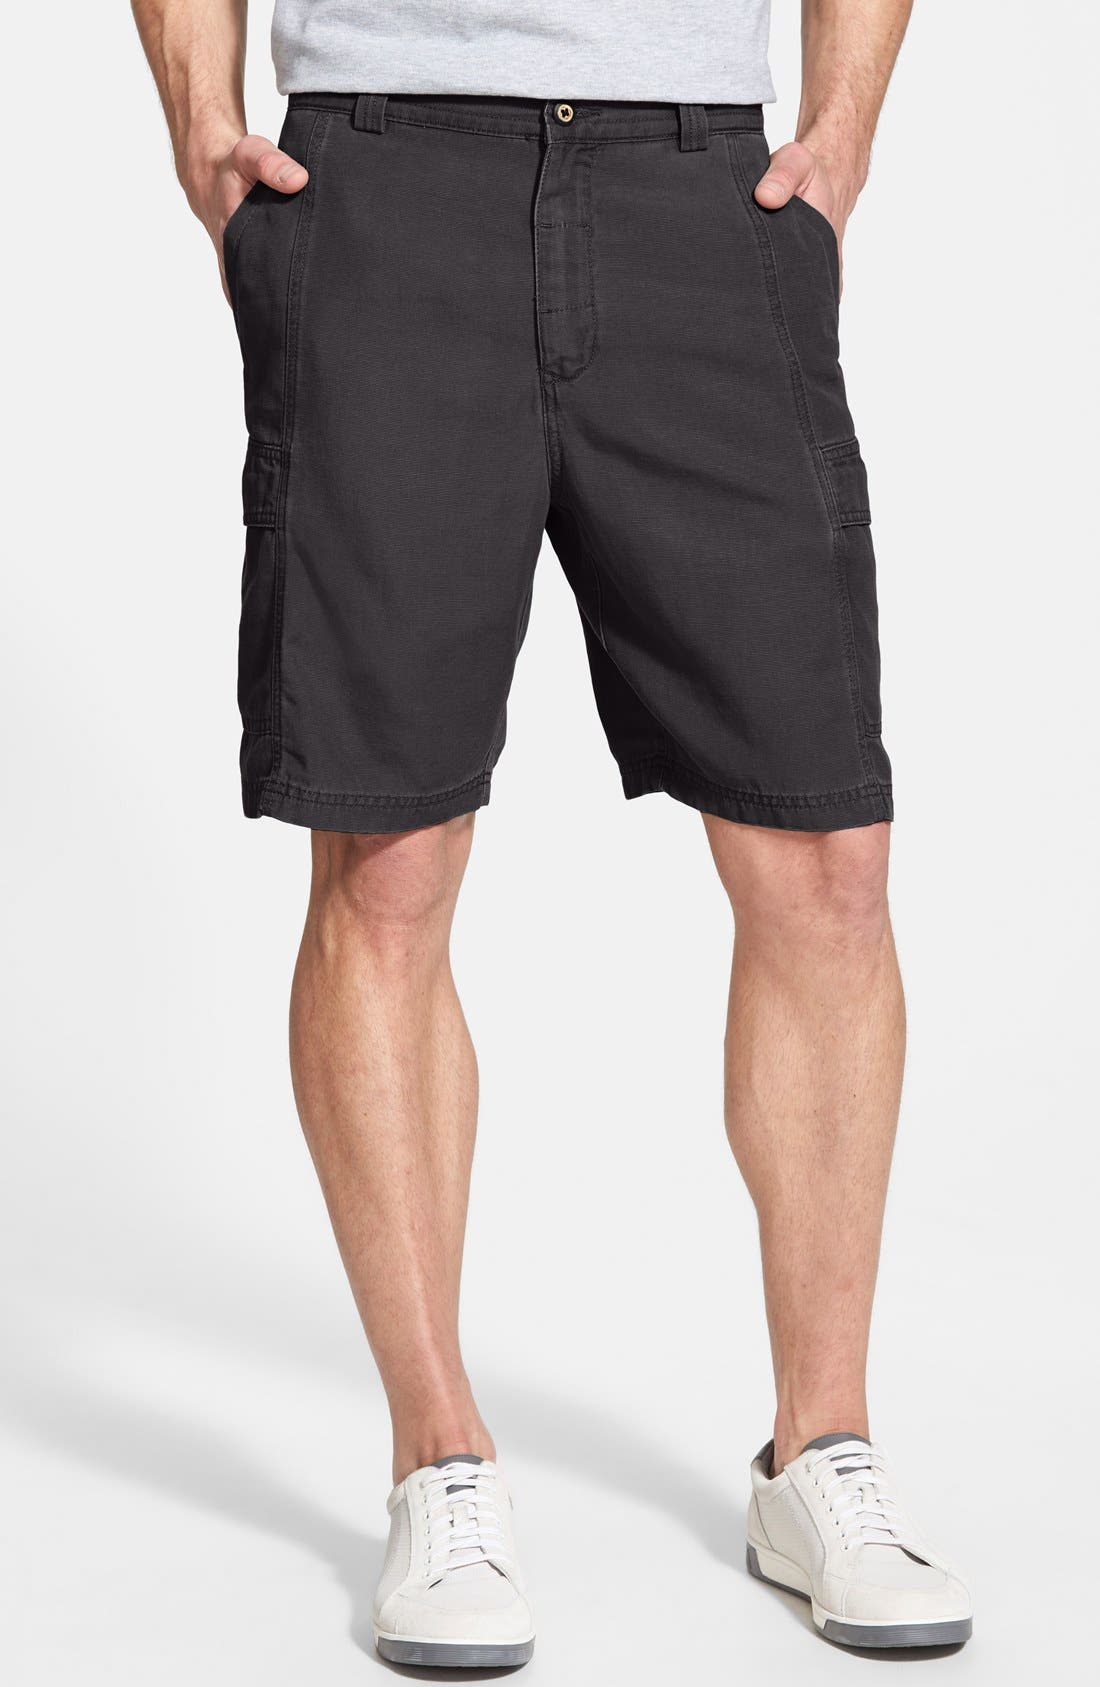 tommy bahama cargo shorts sale